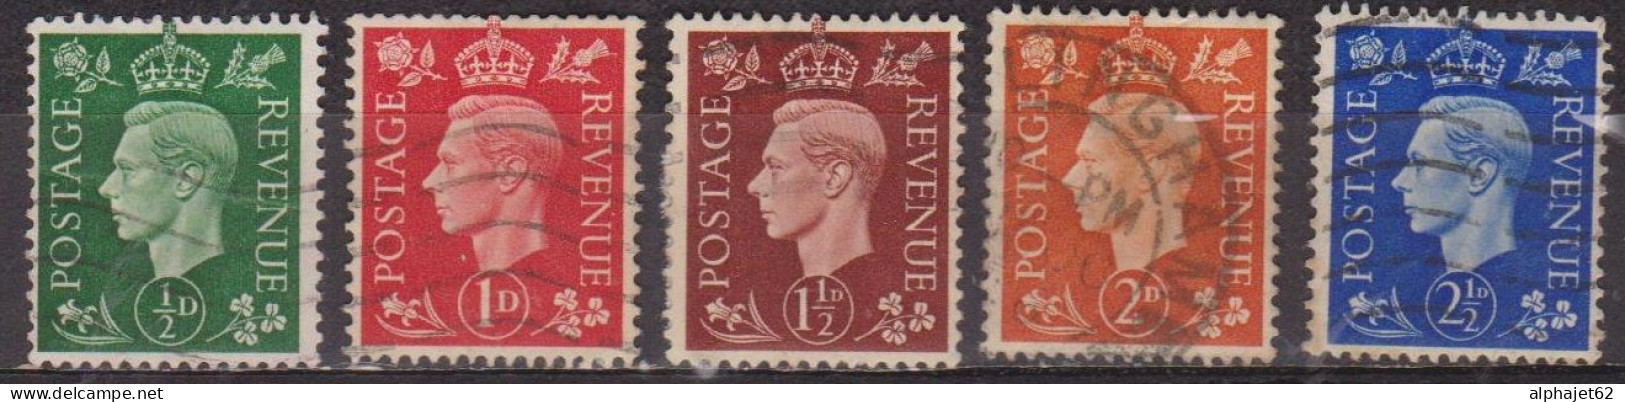 Avènement Du Roi George VI - GRANDE BRETAGNE - 1937 - N° 209 à 213 - Oblitérés